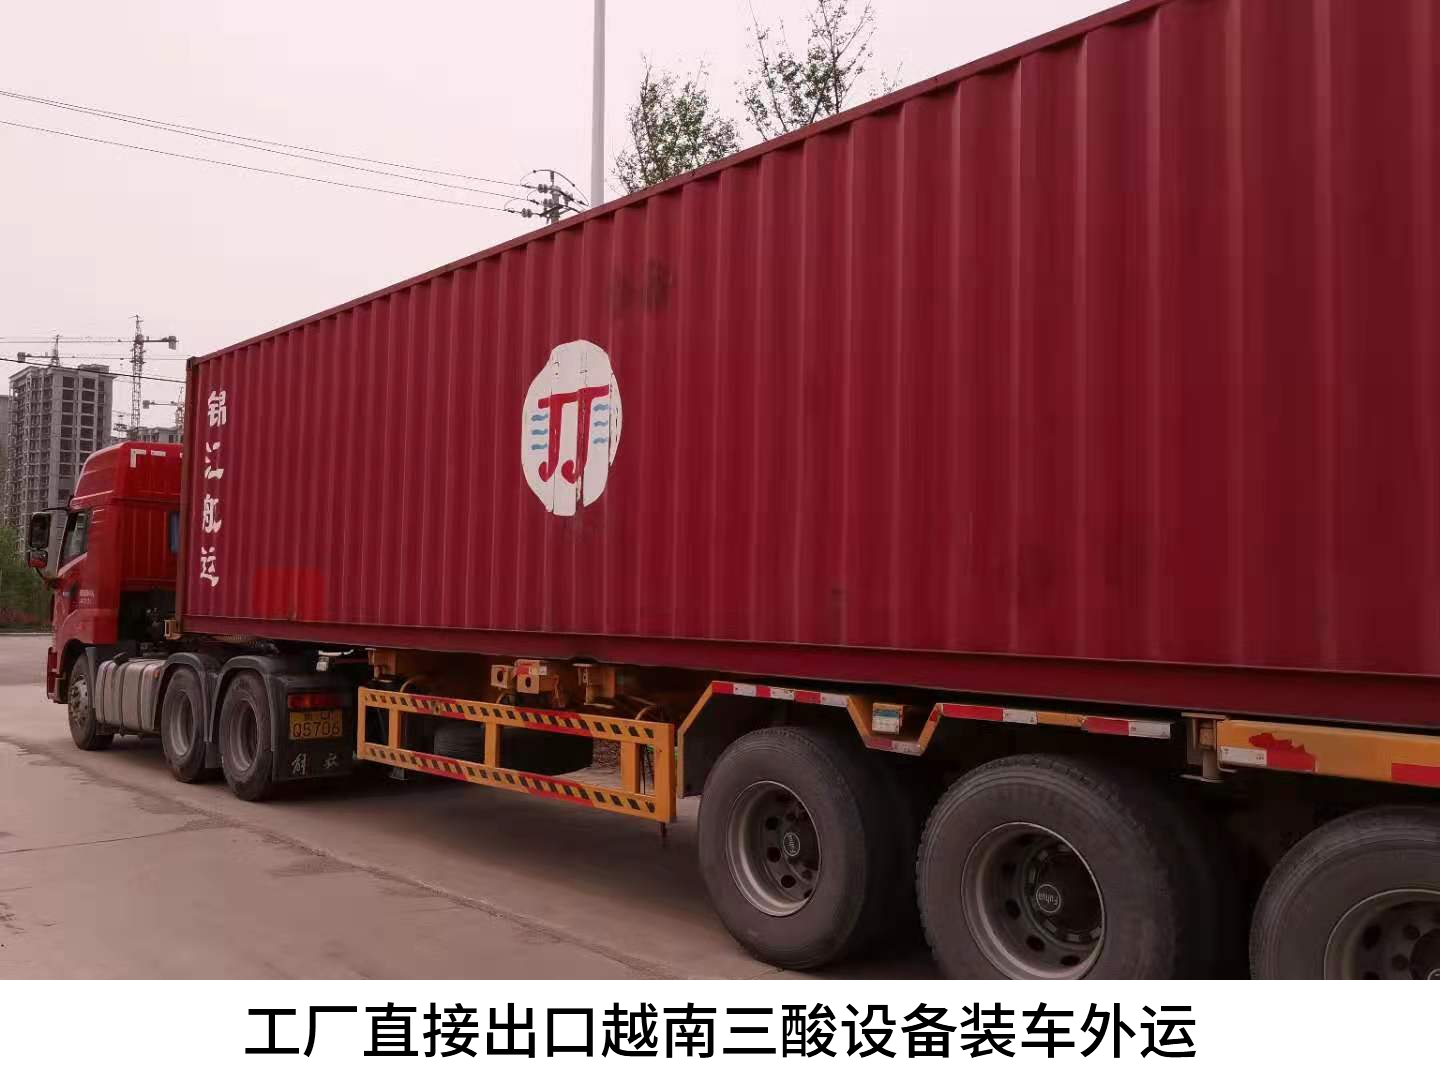 越南永康公司3万吨/年硫酸提纯项目